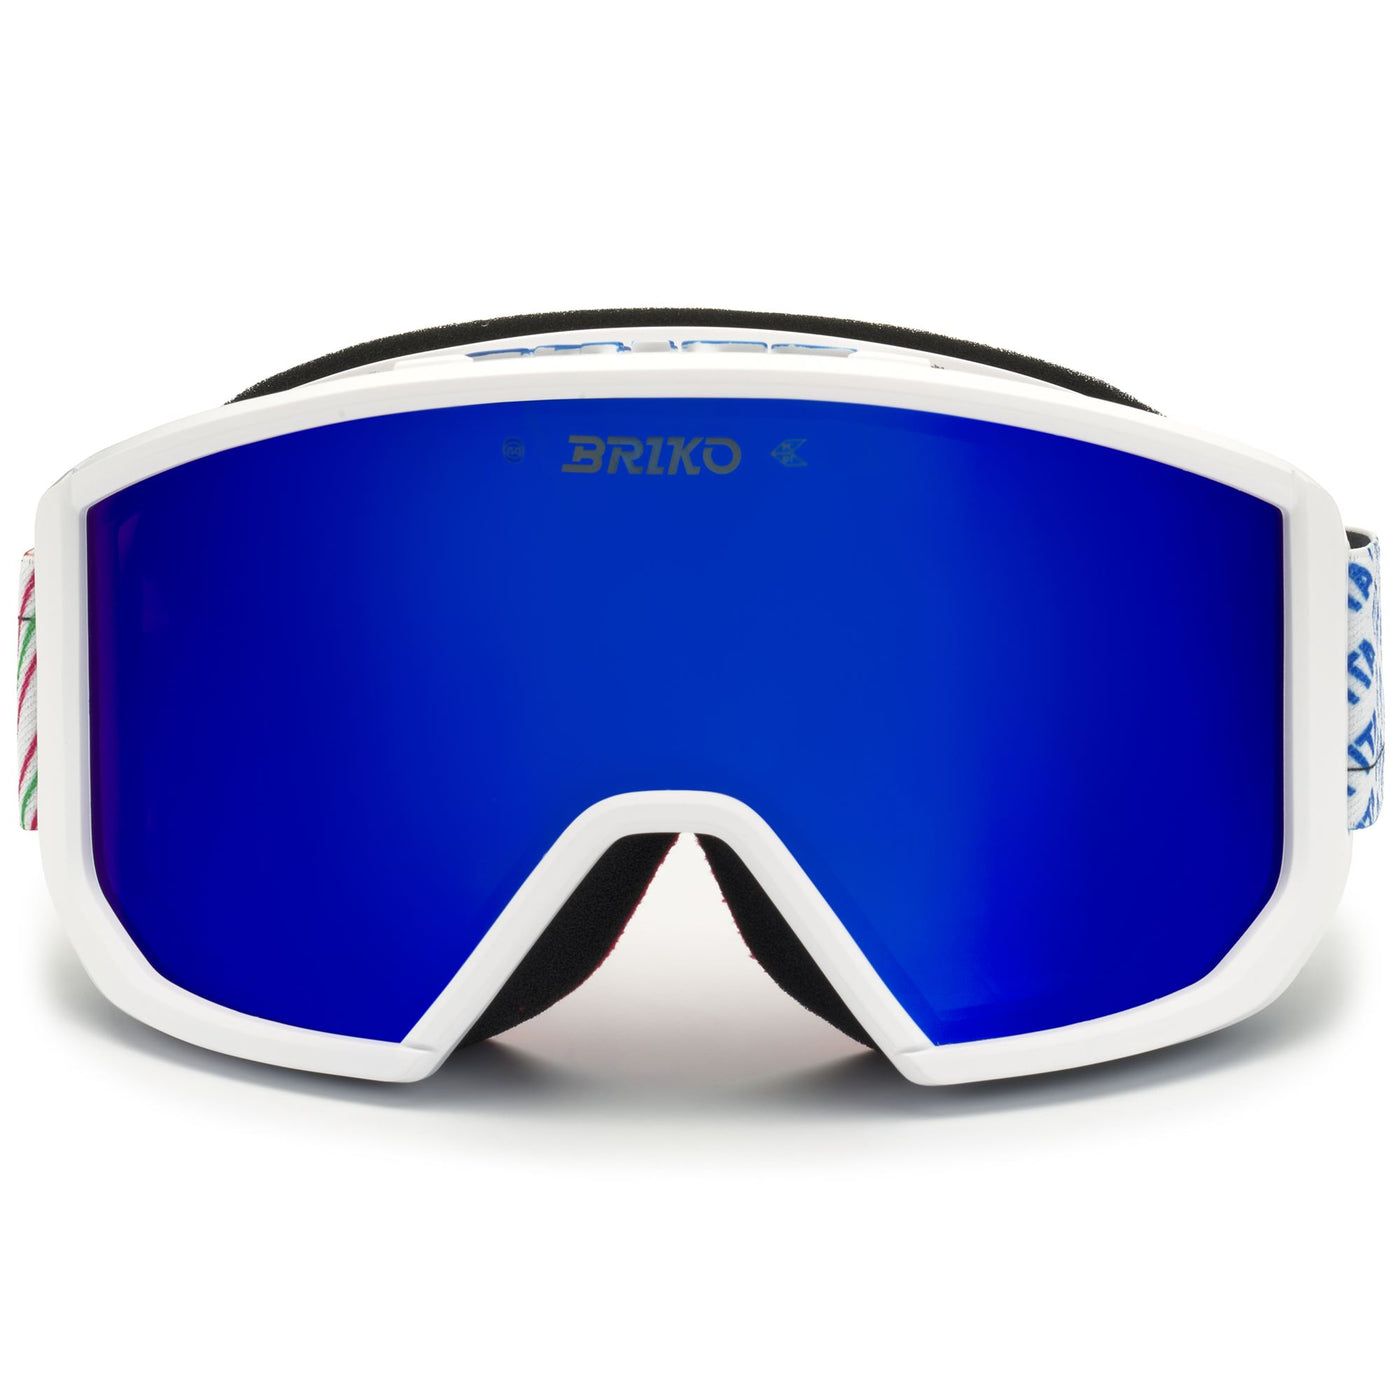 Goggles Unisex VULCANO MASK ITALIA Ski  Goggles WHITE SCIENCE BLUE - BM2 Photo (jpg Rgb)			